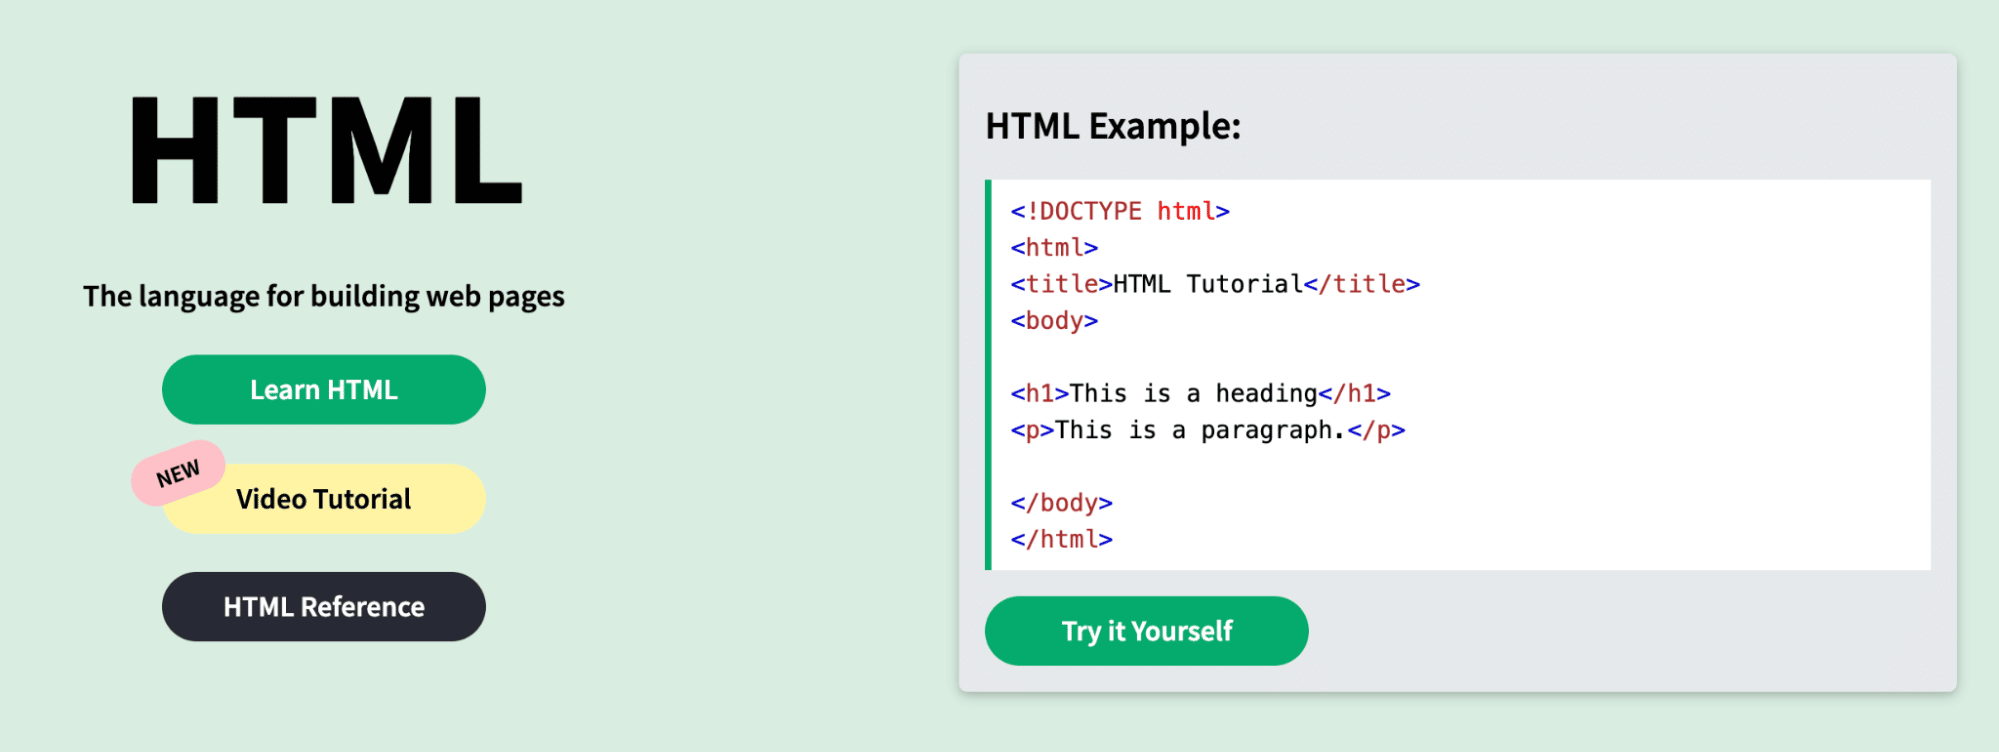 Ein HTML-Sprachbeispie